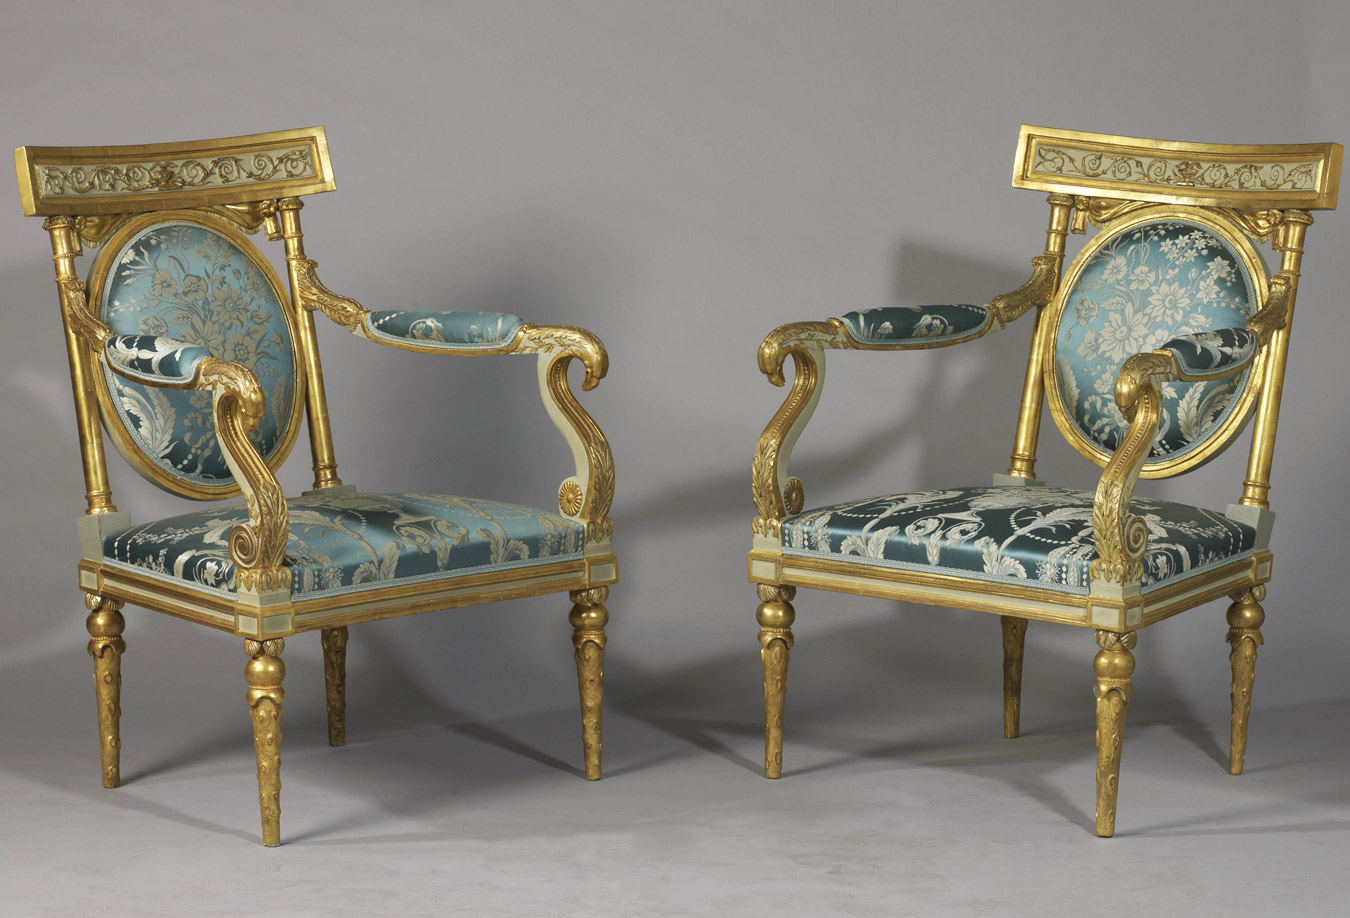 Importante paire de fauteuils à tête d'aigle - Patrimoine Charles-André COLONNA WALEWSKI, en ligne directe de Napoléon